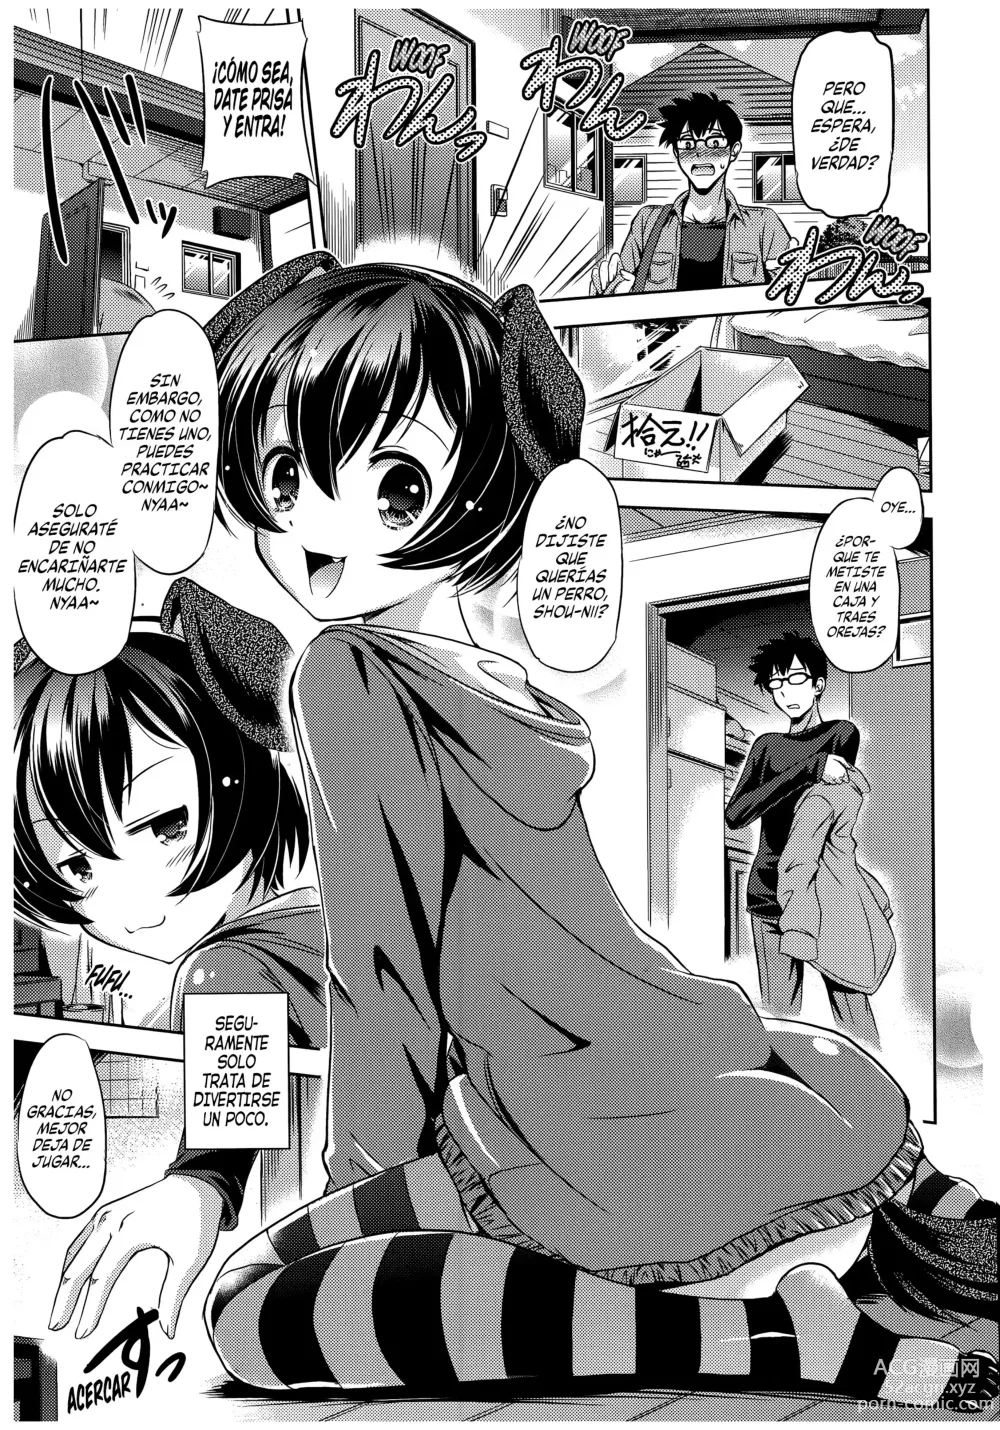 Page 5 of manga Entrenando a un Perrito